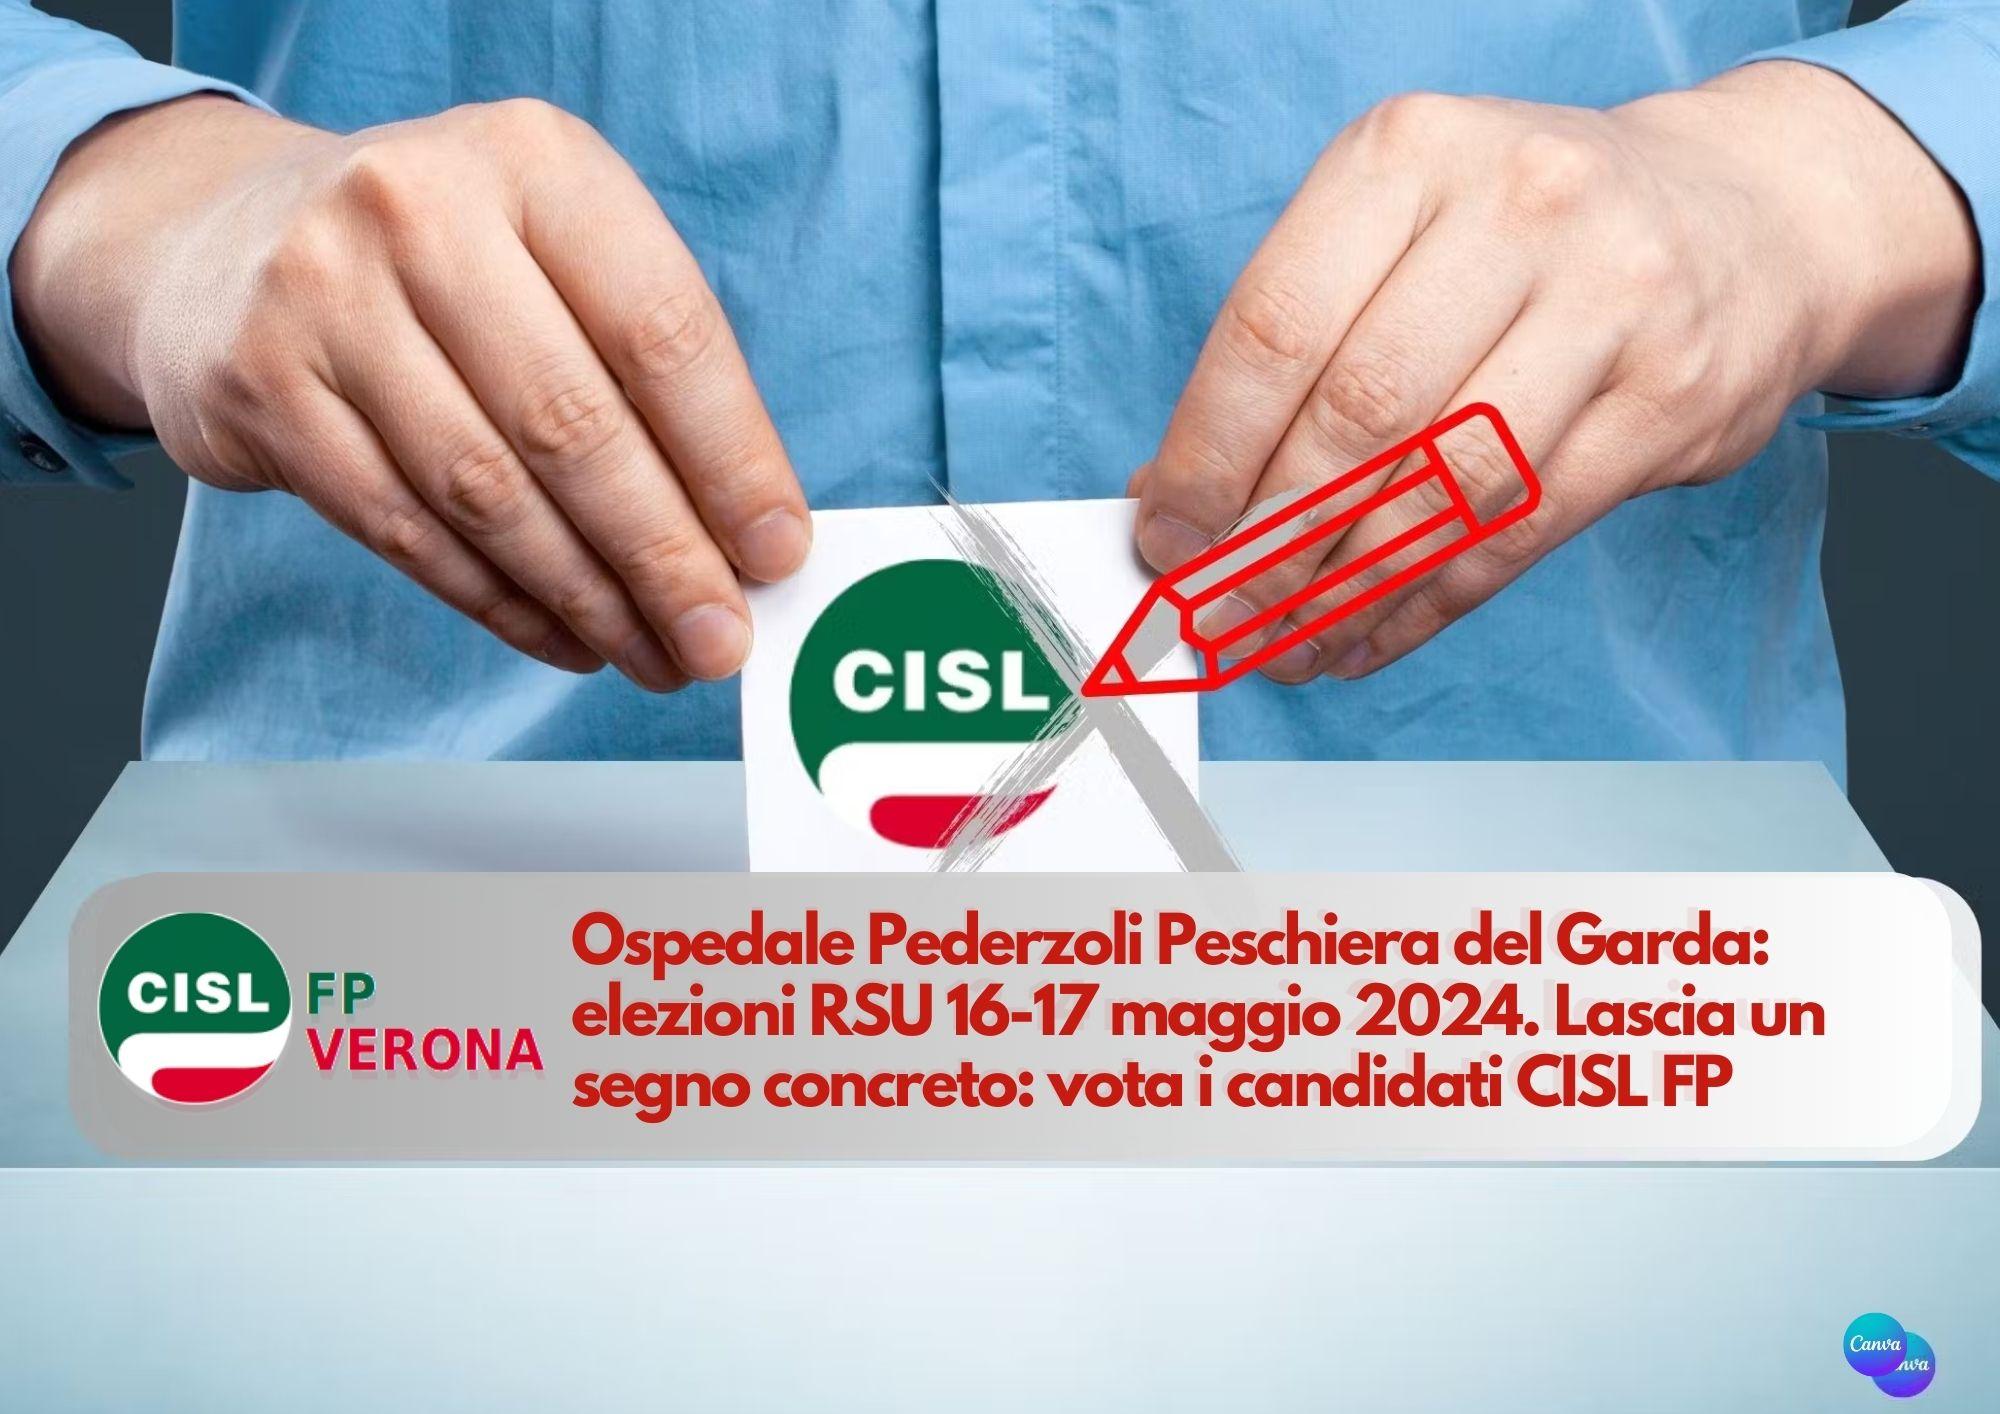 CISL FP Verona. Ospedale Pederzoli Peschiera: 16-17 maggio vota i candidati CISL per la RSU